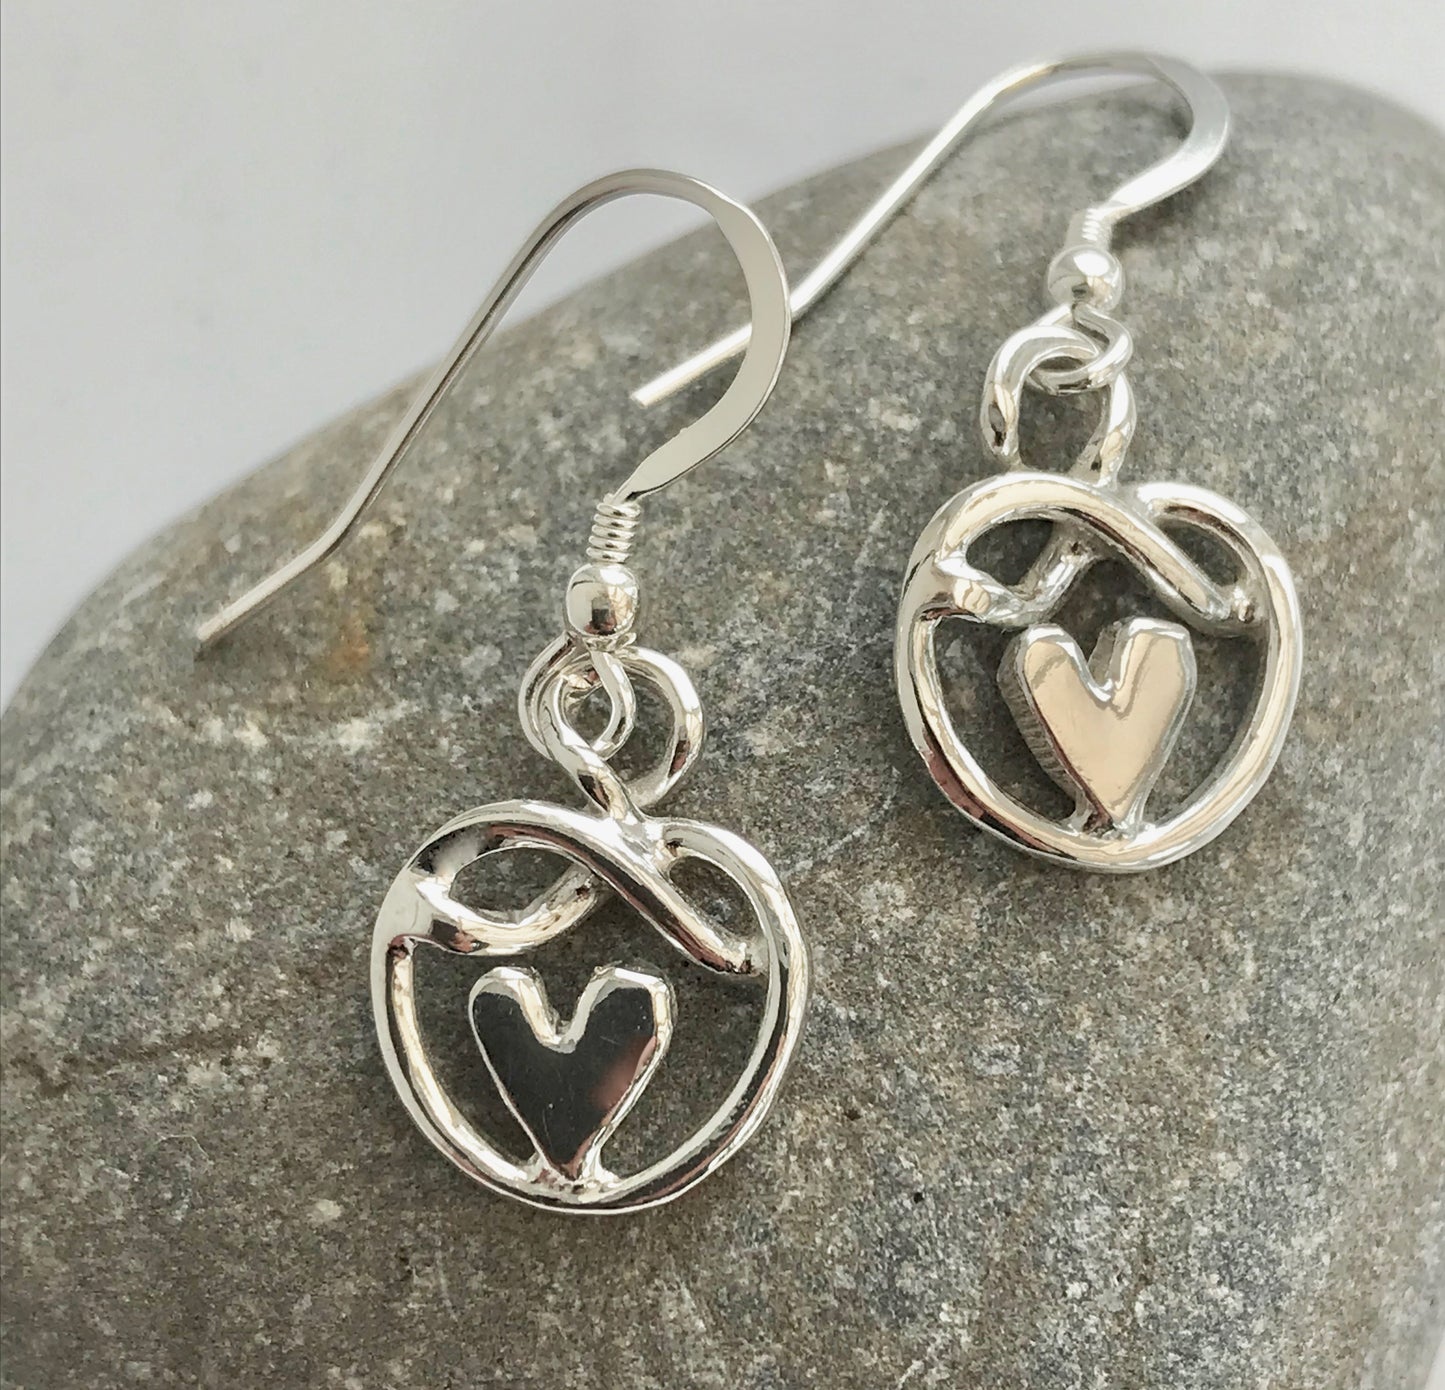 Heart knot of friendship earrings